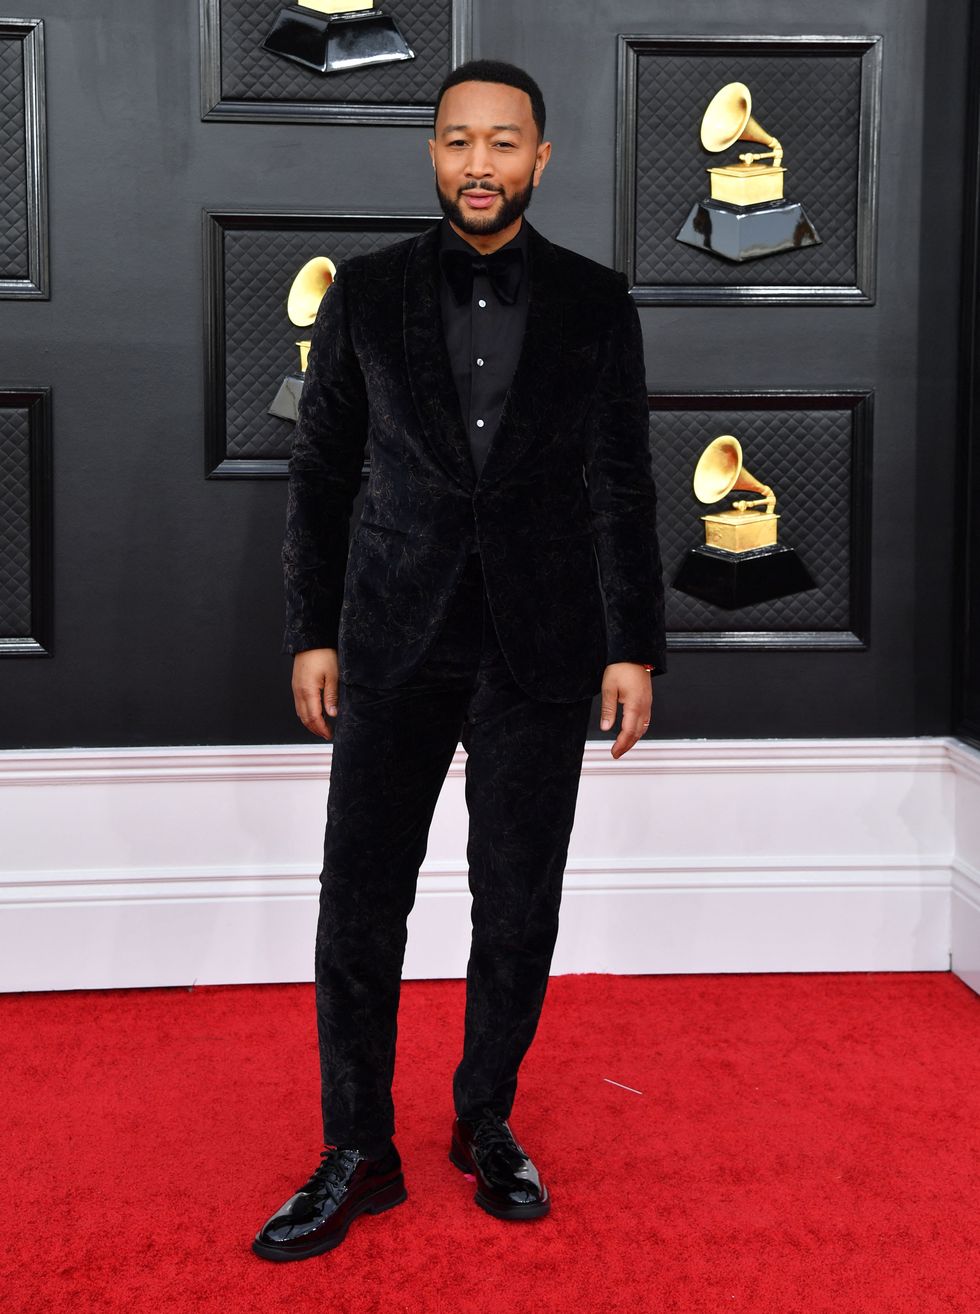 John Legend chuẩn quý ông với suit nhung đen sang trọng.